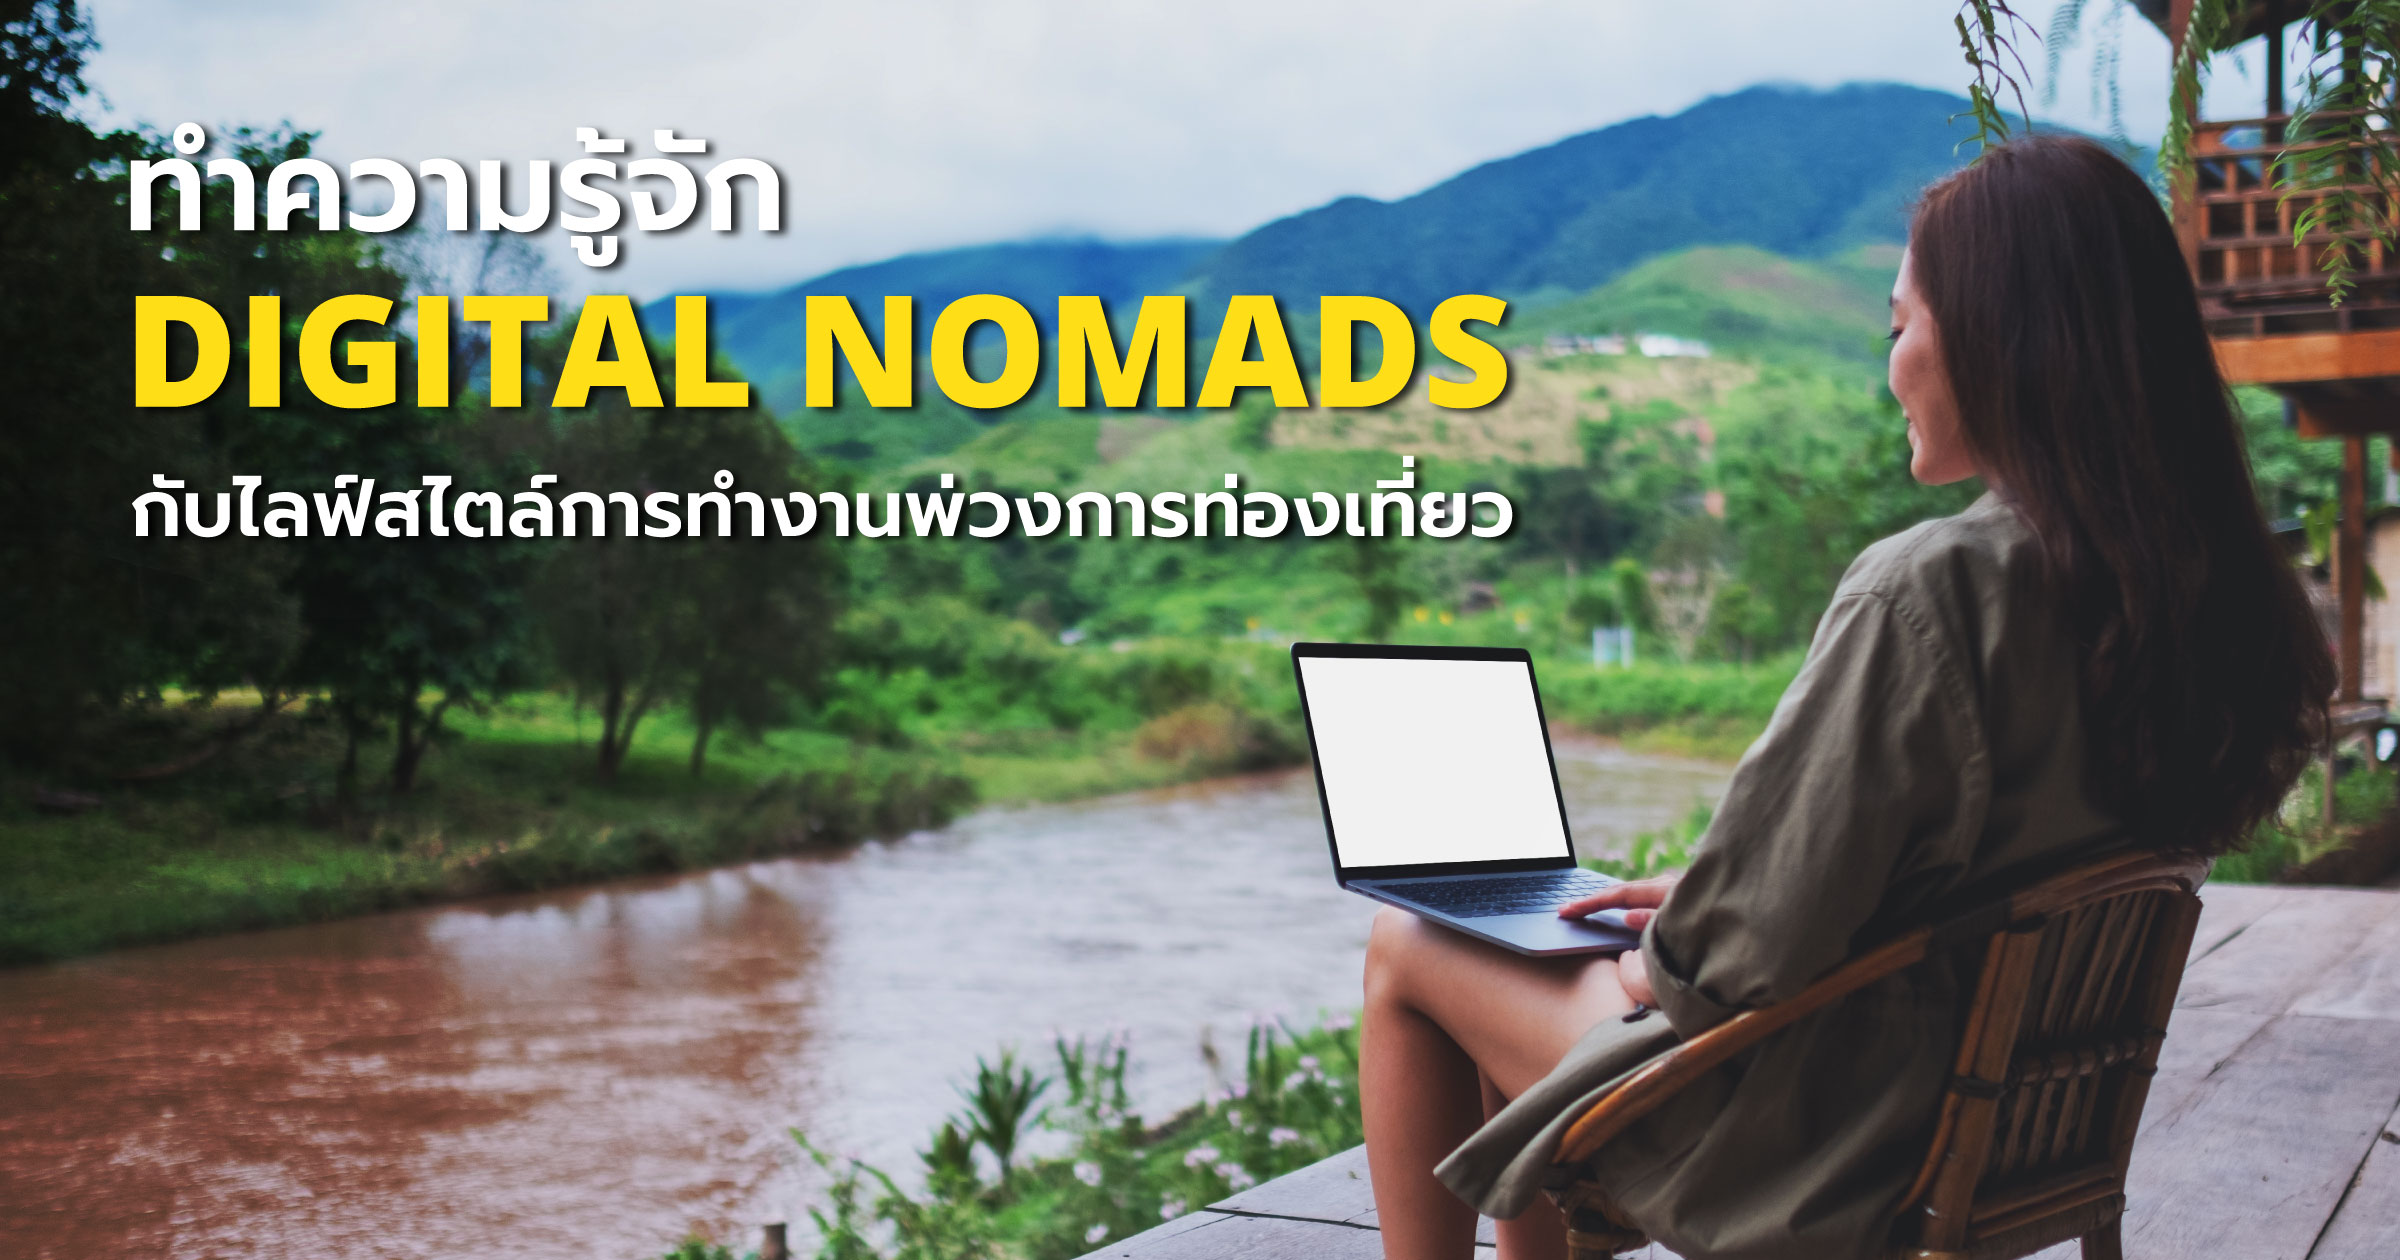 ทำความรู้จัก Digital Nomads กับไลฟ์สไตล์การทำงานพ่วงการท่องเที่ยว